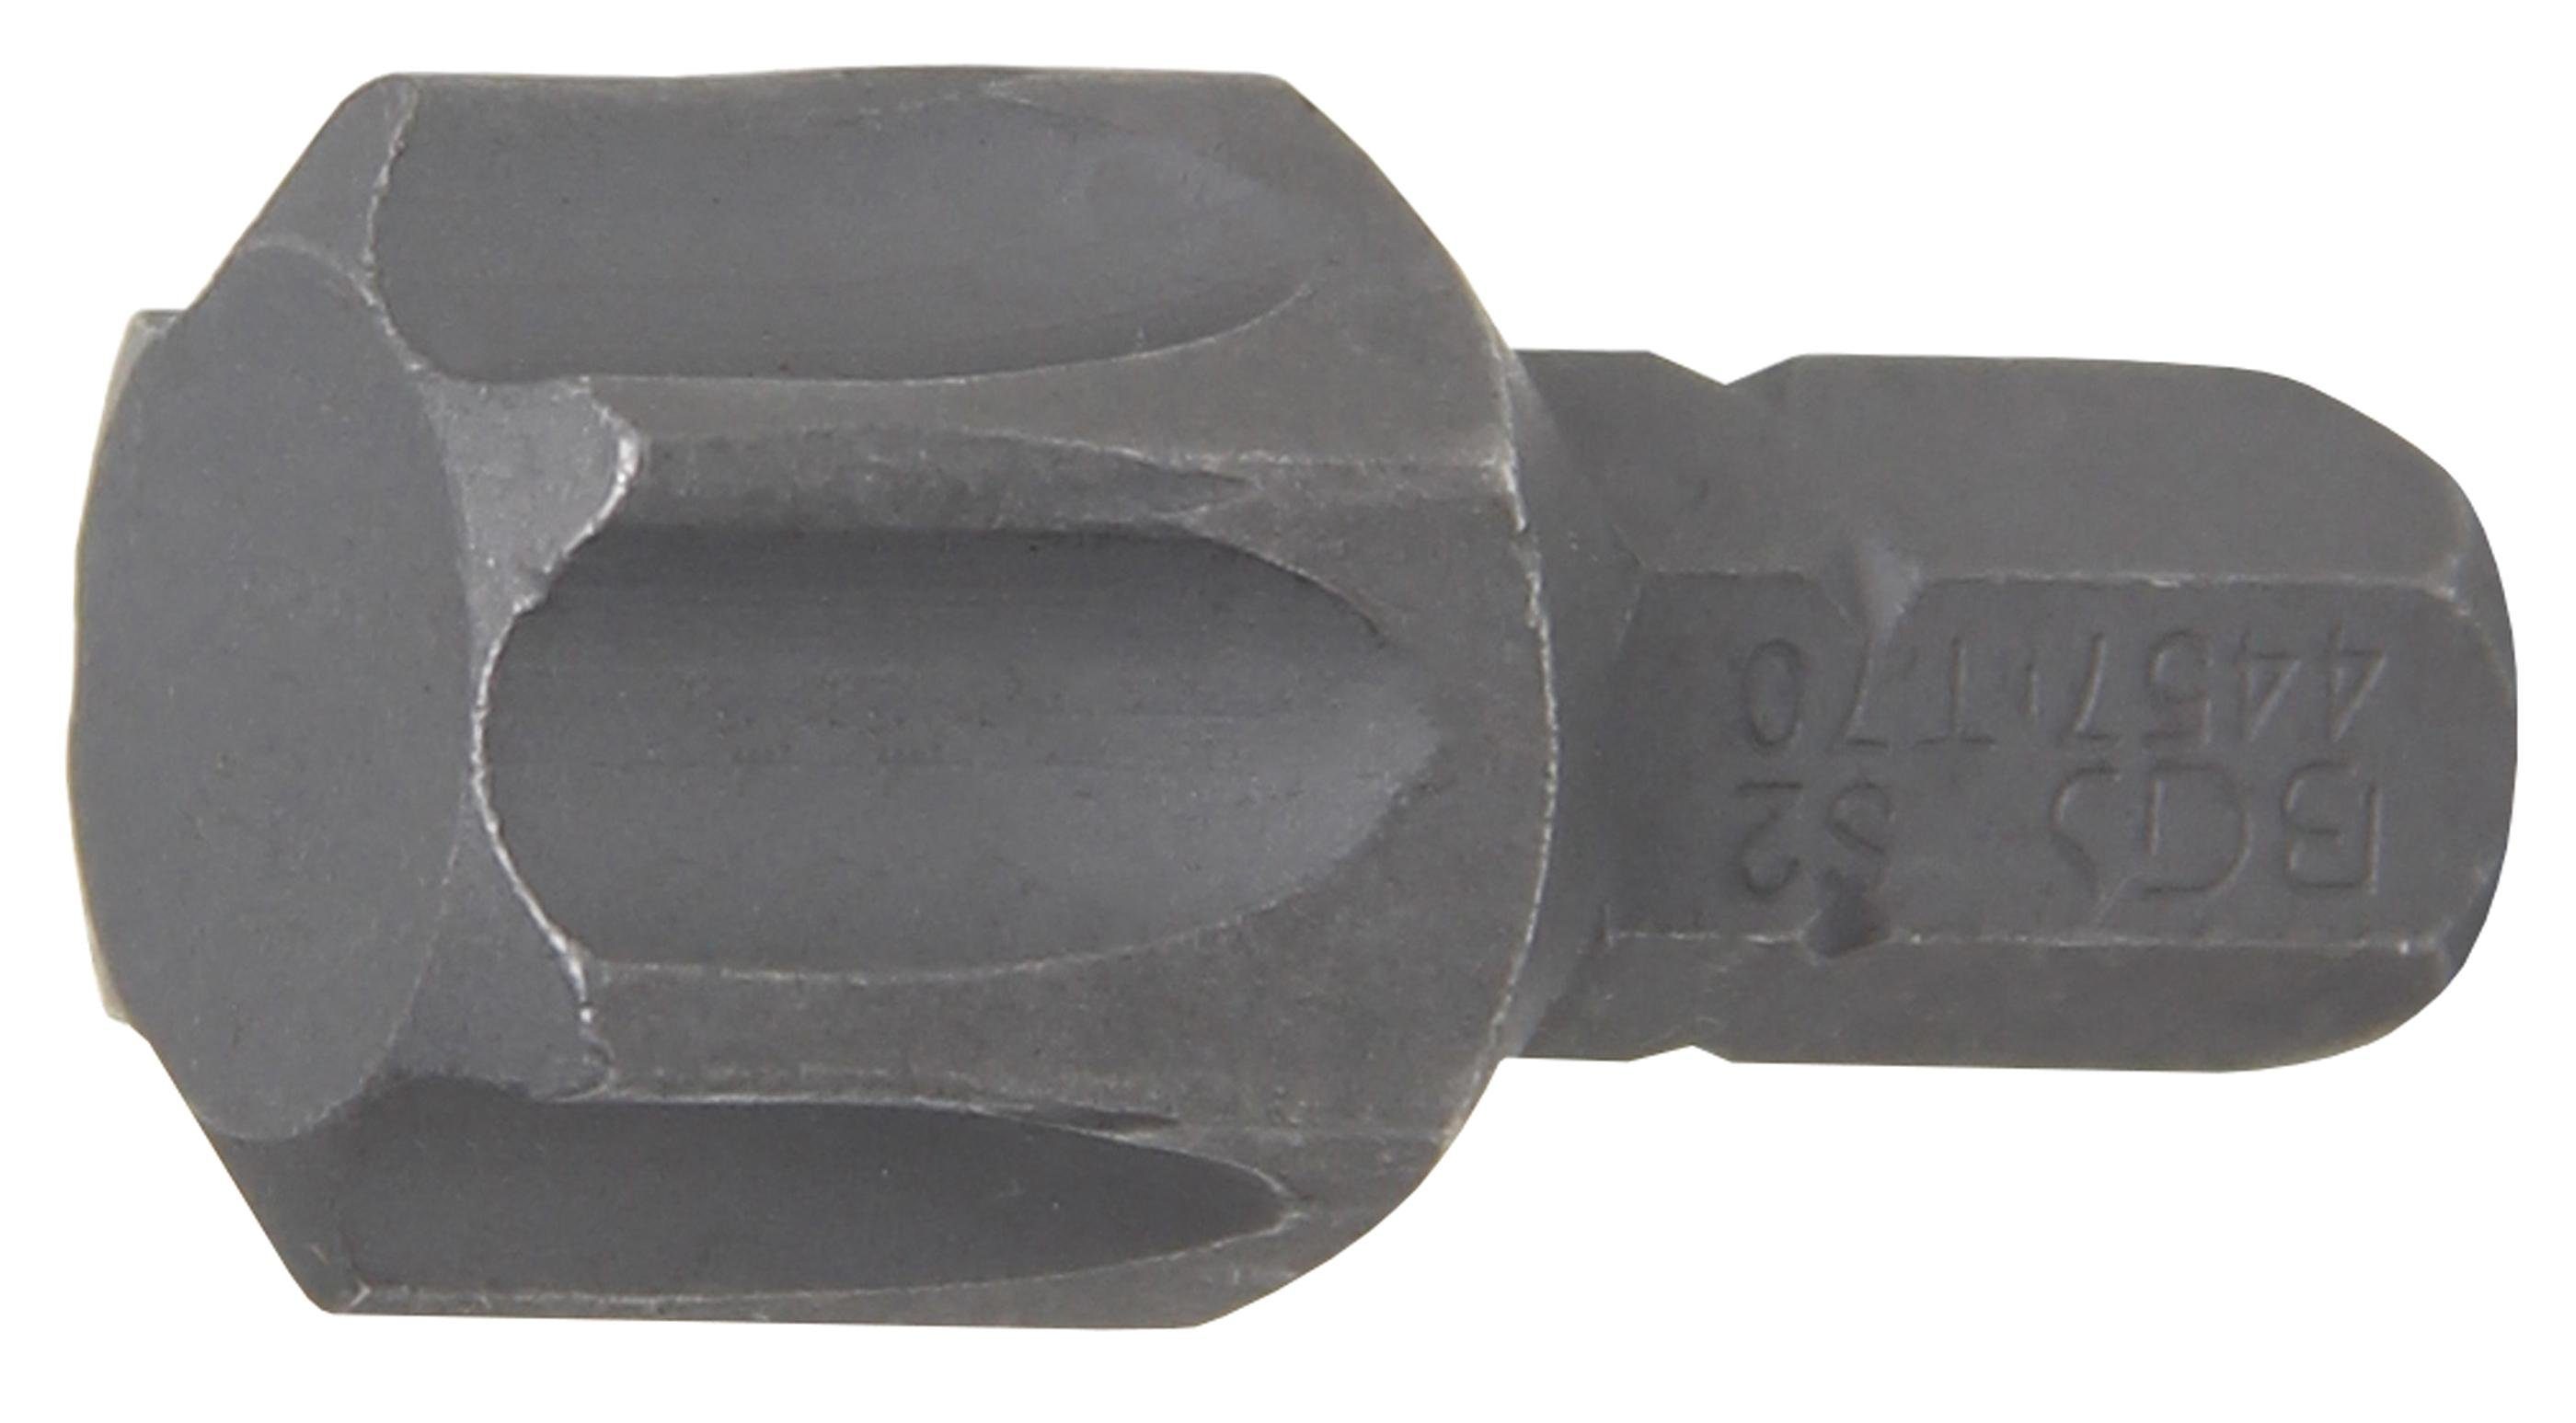 BGS technic Bit-Schraubendreher Bit, Antrieb Außensechskant 8 mm (5/16), T-Profil (für Torx) T70